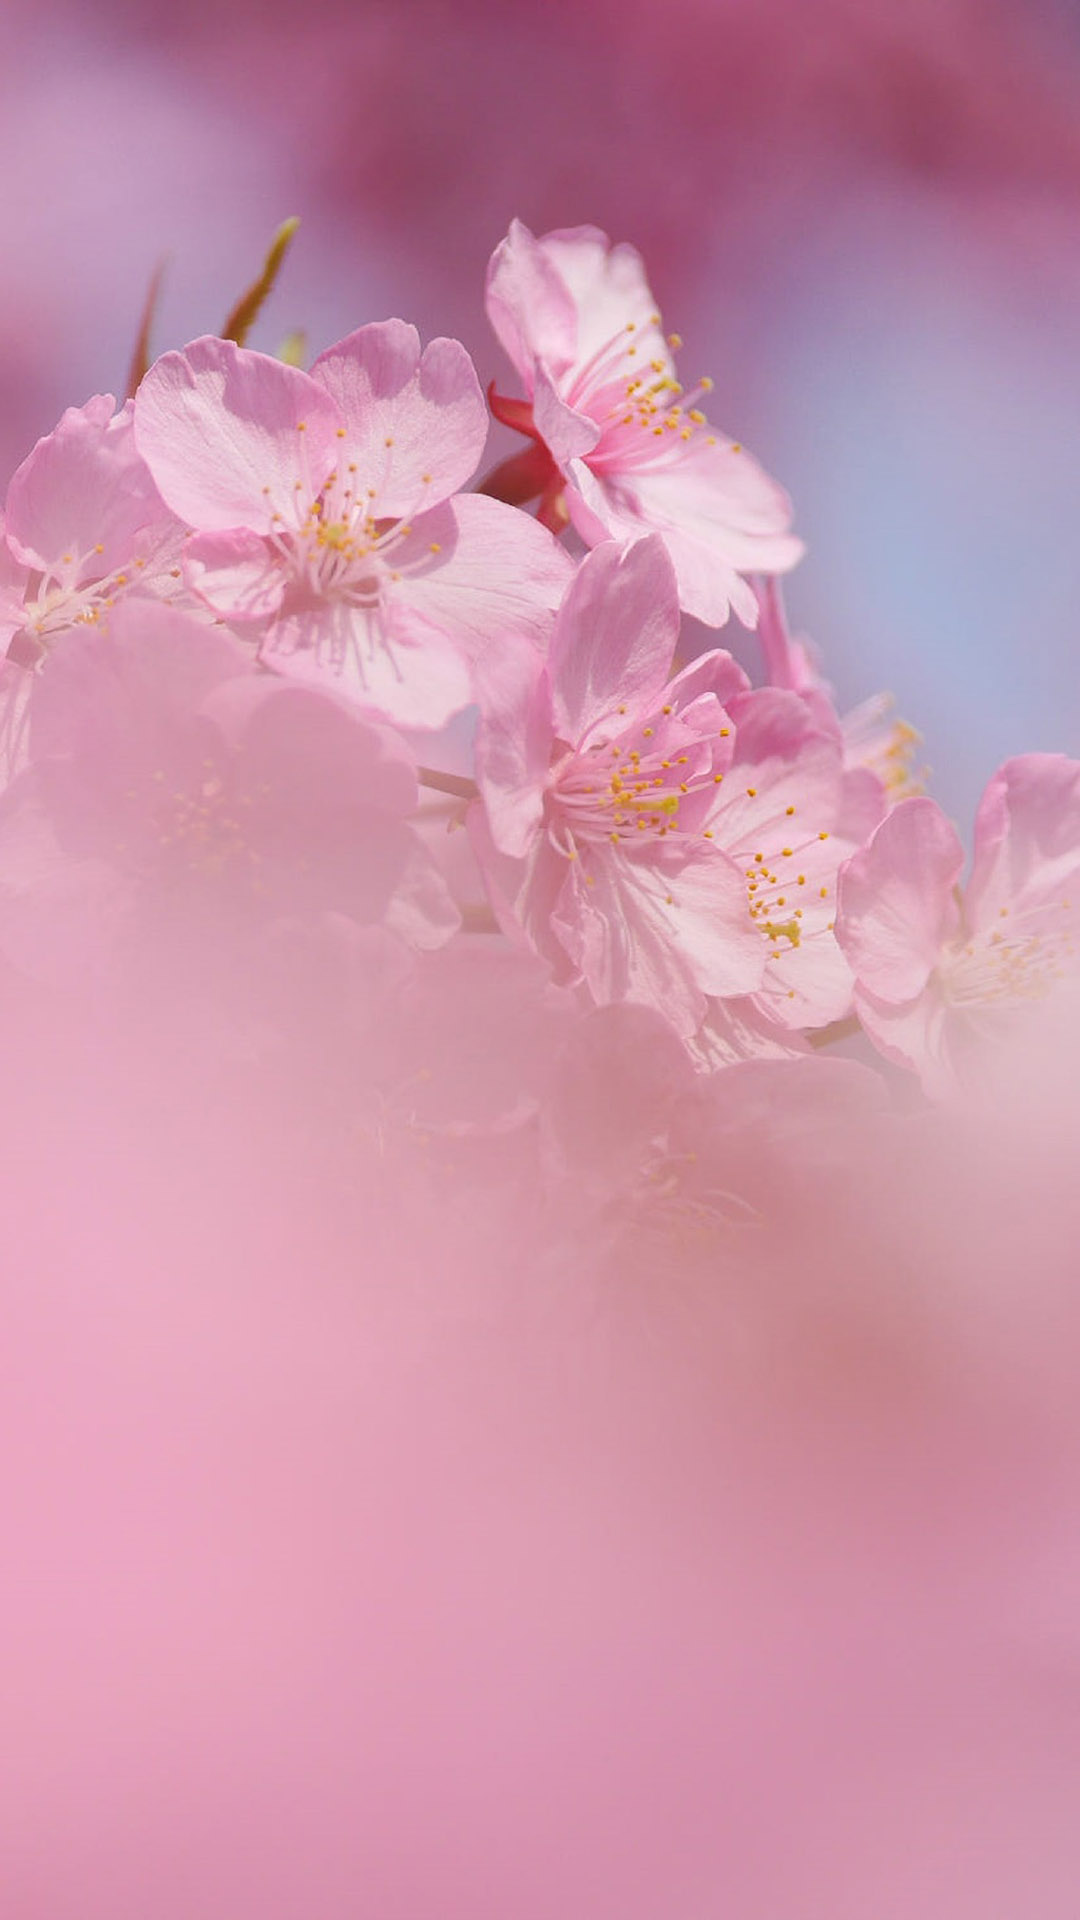 粉色桃花唯美风景摄影图片手机壁纸,vivox6锁屏壁纸